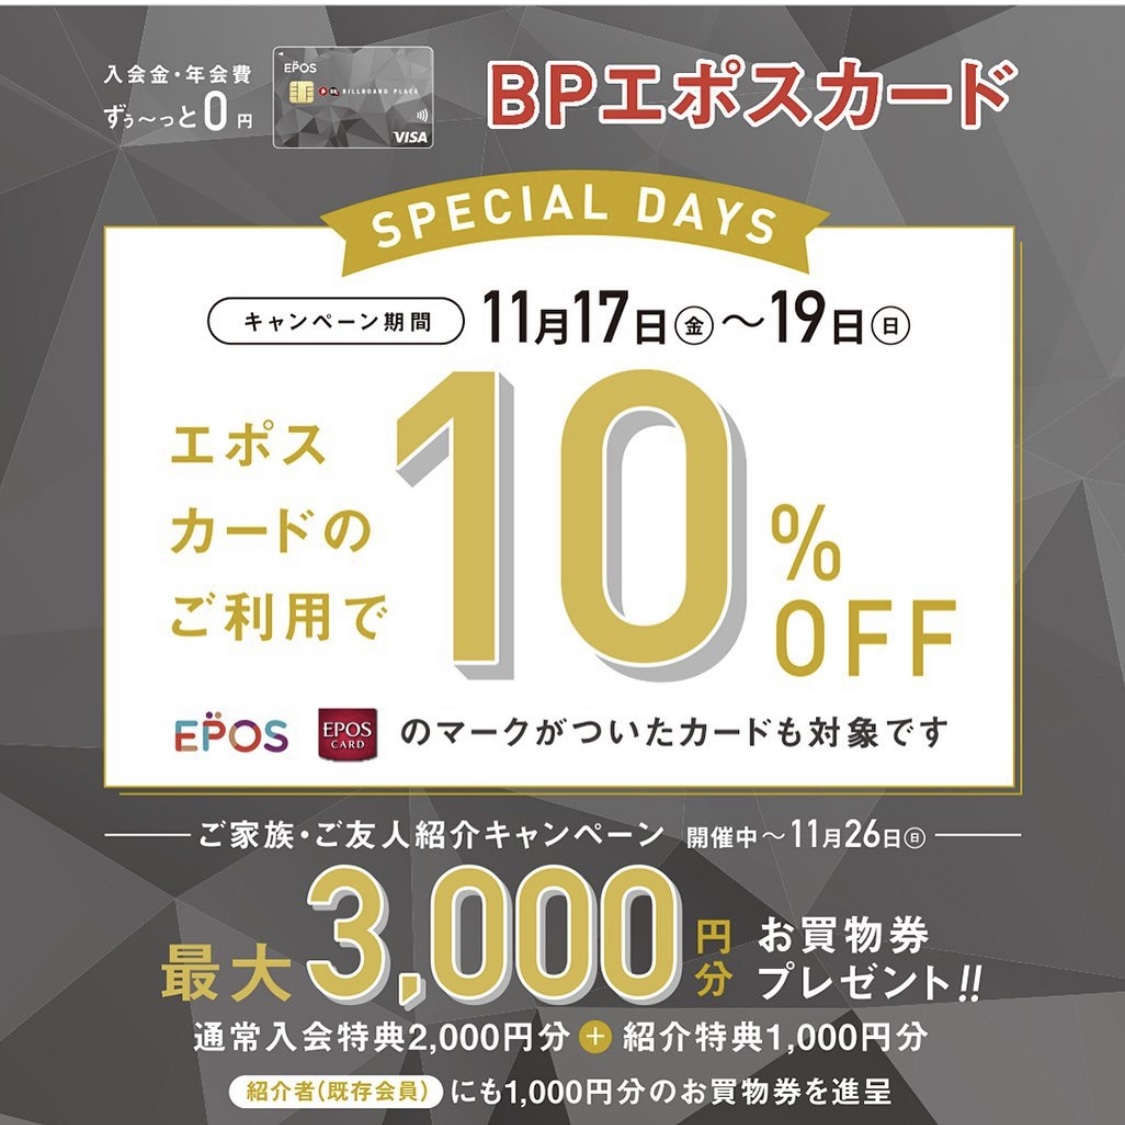 【スリークBP】BPエポスカード10%OFFのお知らせ